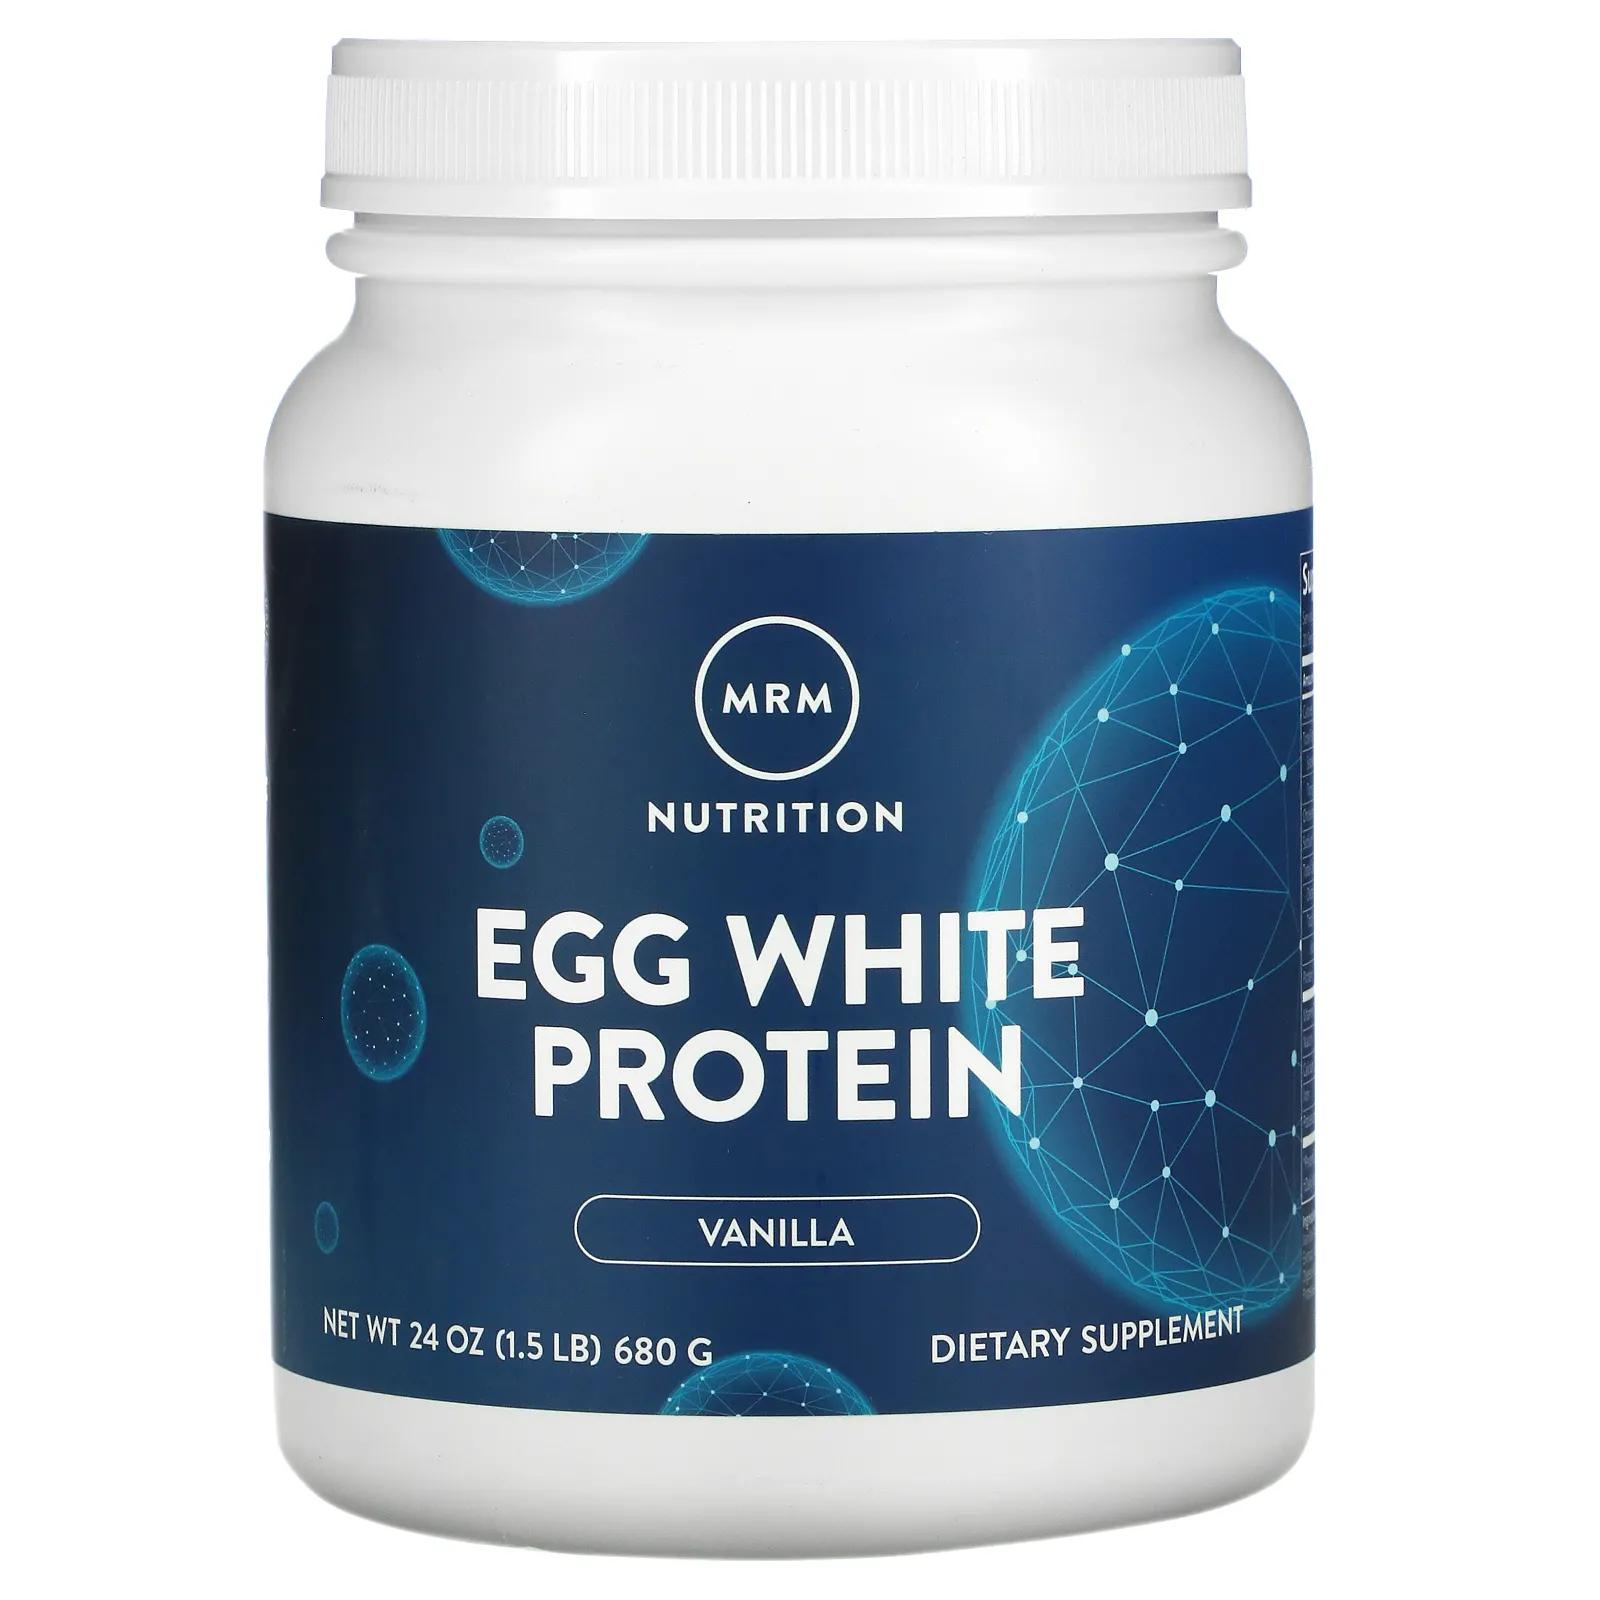 MRM Натуральный яичный белок французская ваниль 24 унции (680 г) mrm натуральный протеин яичного белка шоколад 680 г